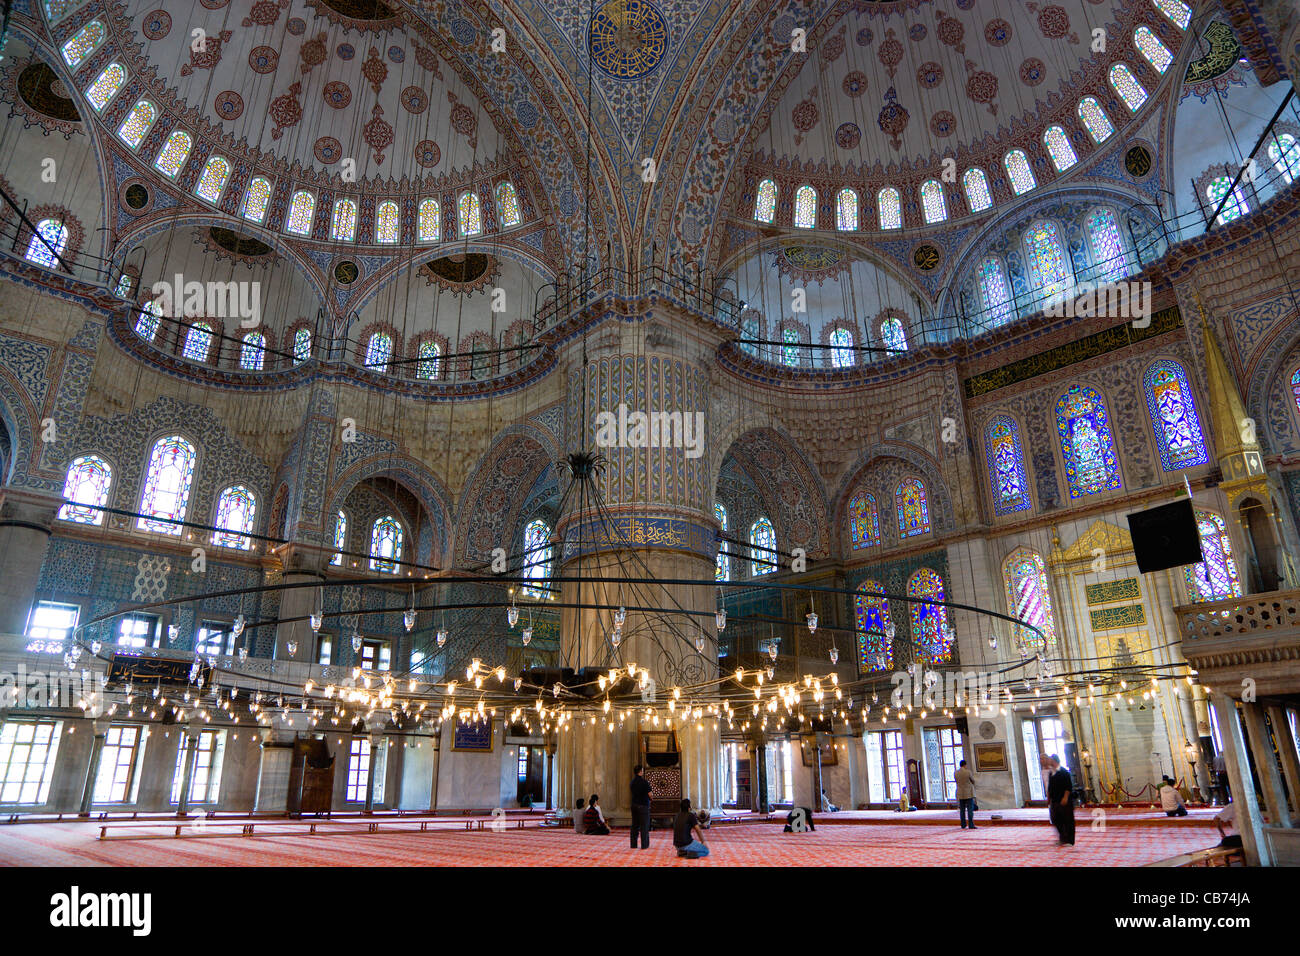 Türkei, Istanbul, Sultanahmet Camii, die blaue Moschee-Interieur mit Menschen beim Gebet unter Kronleuchtern und verzierten Kuppeln. Stockfoto